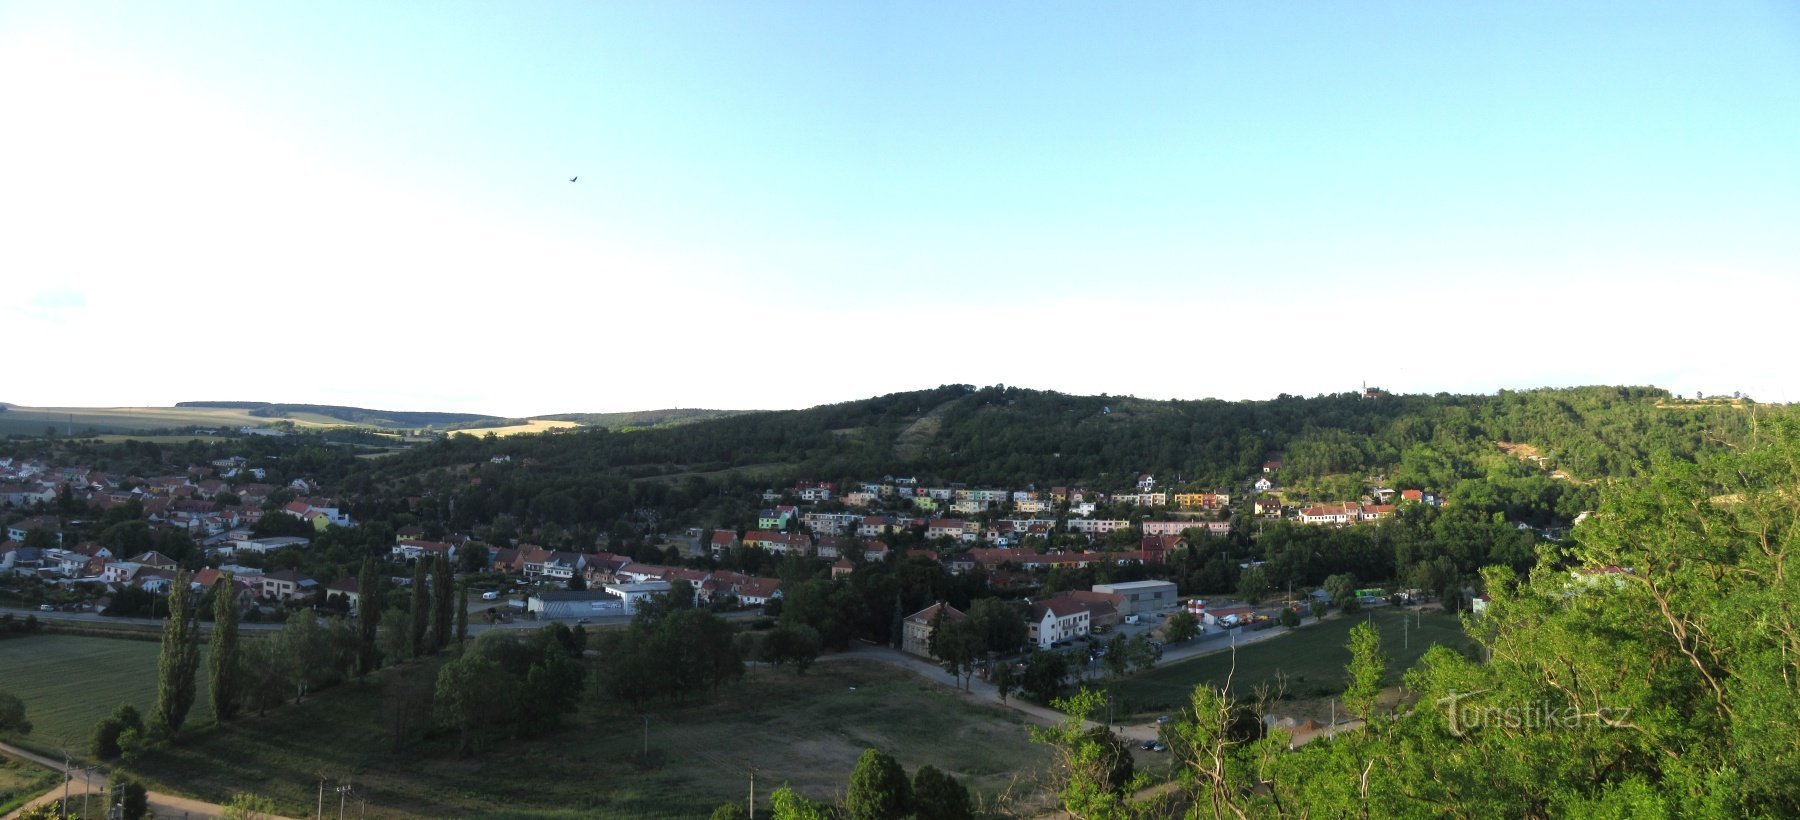 Ivančice - nad Renem - twierdza, park i wieża widokowa Alfonsa Muchy (Réna)